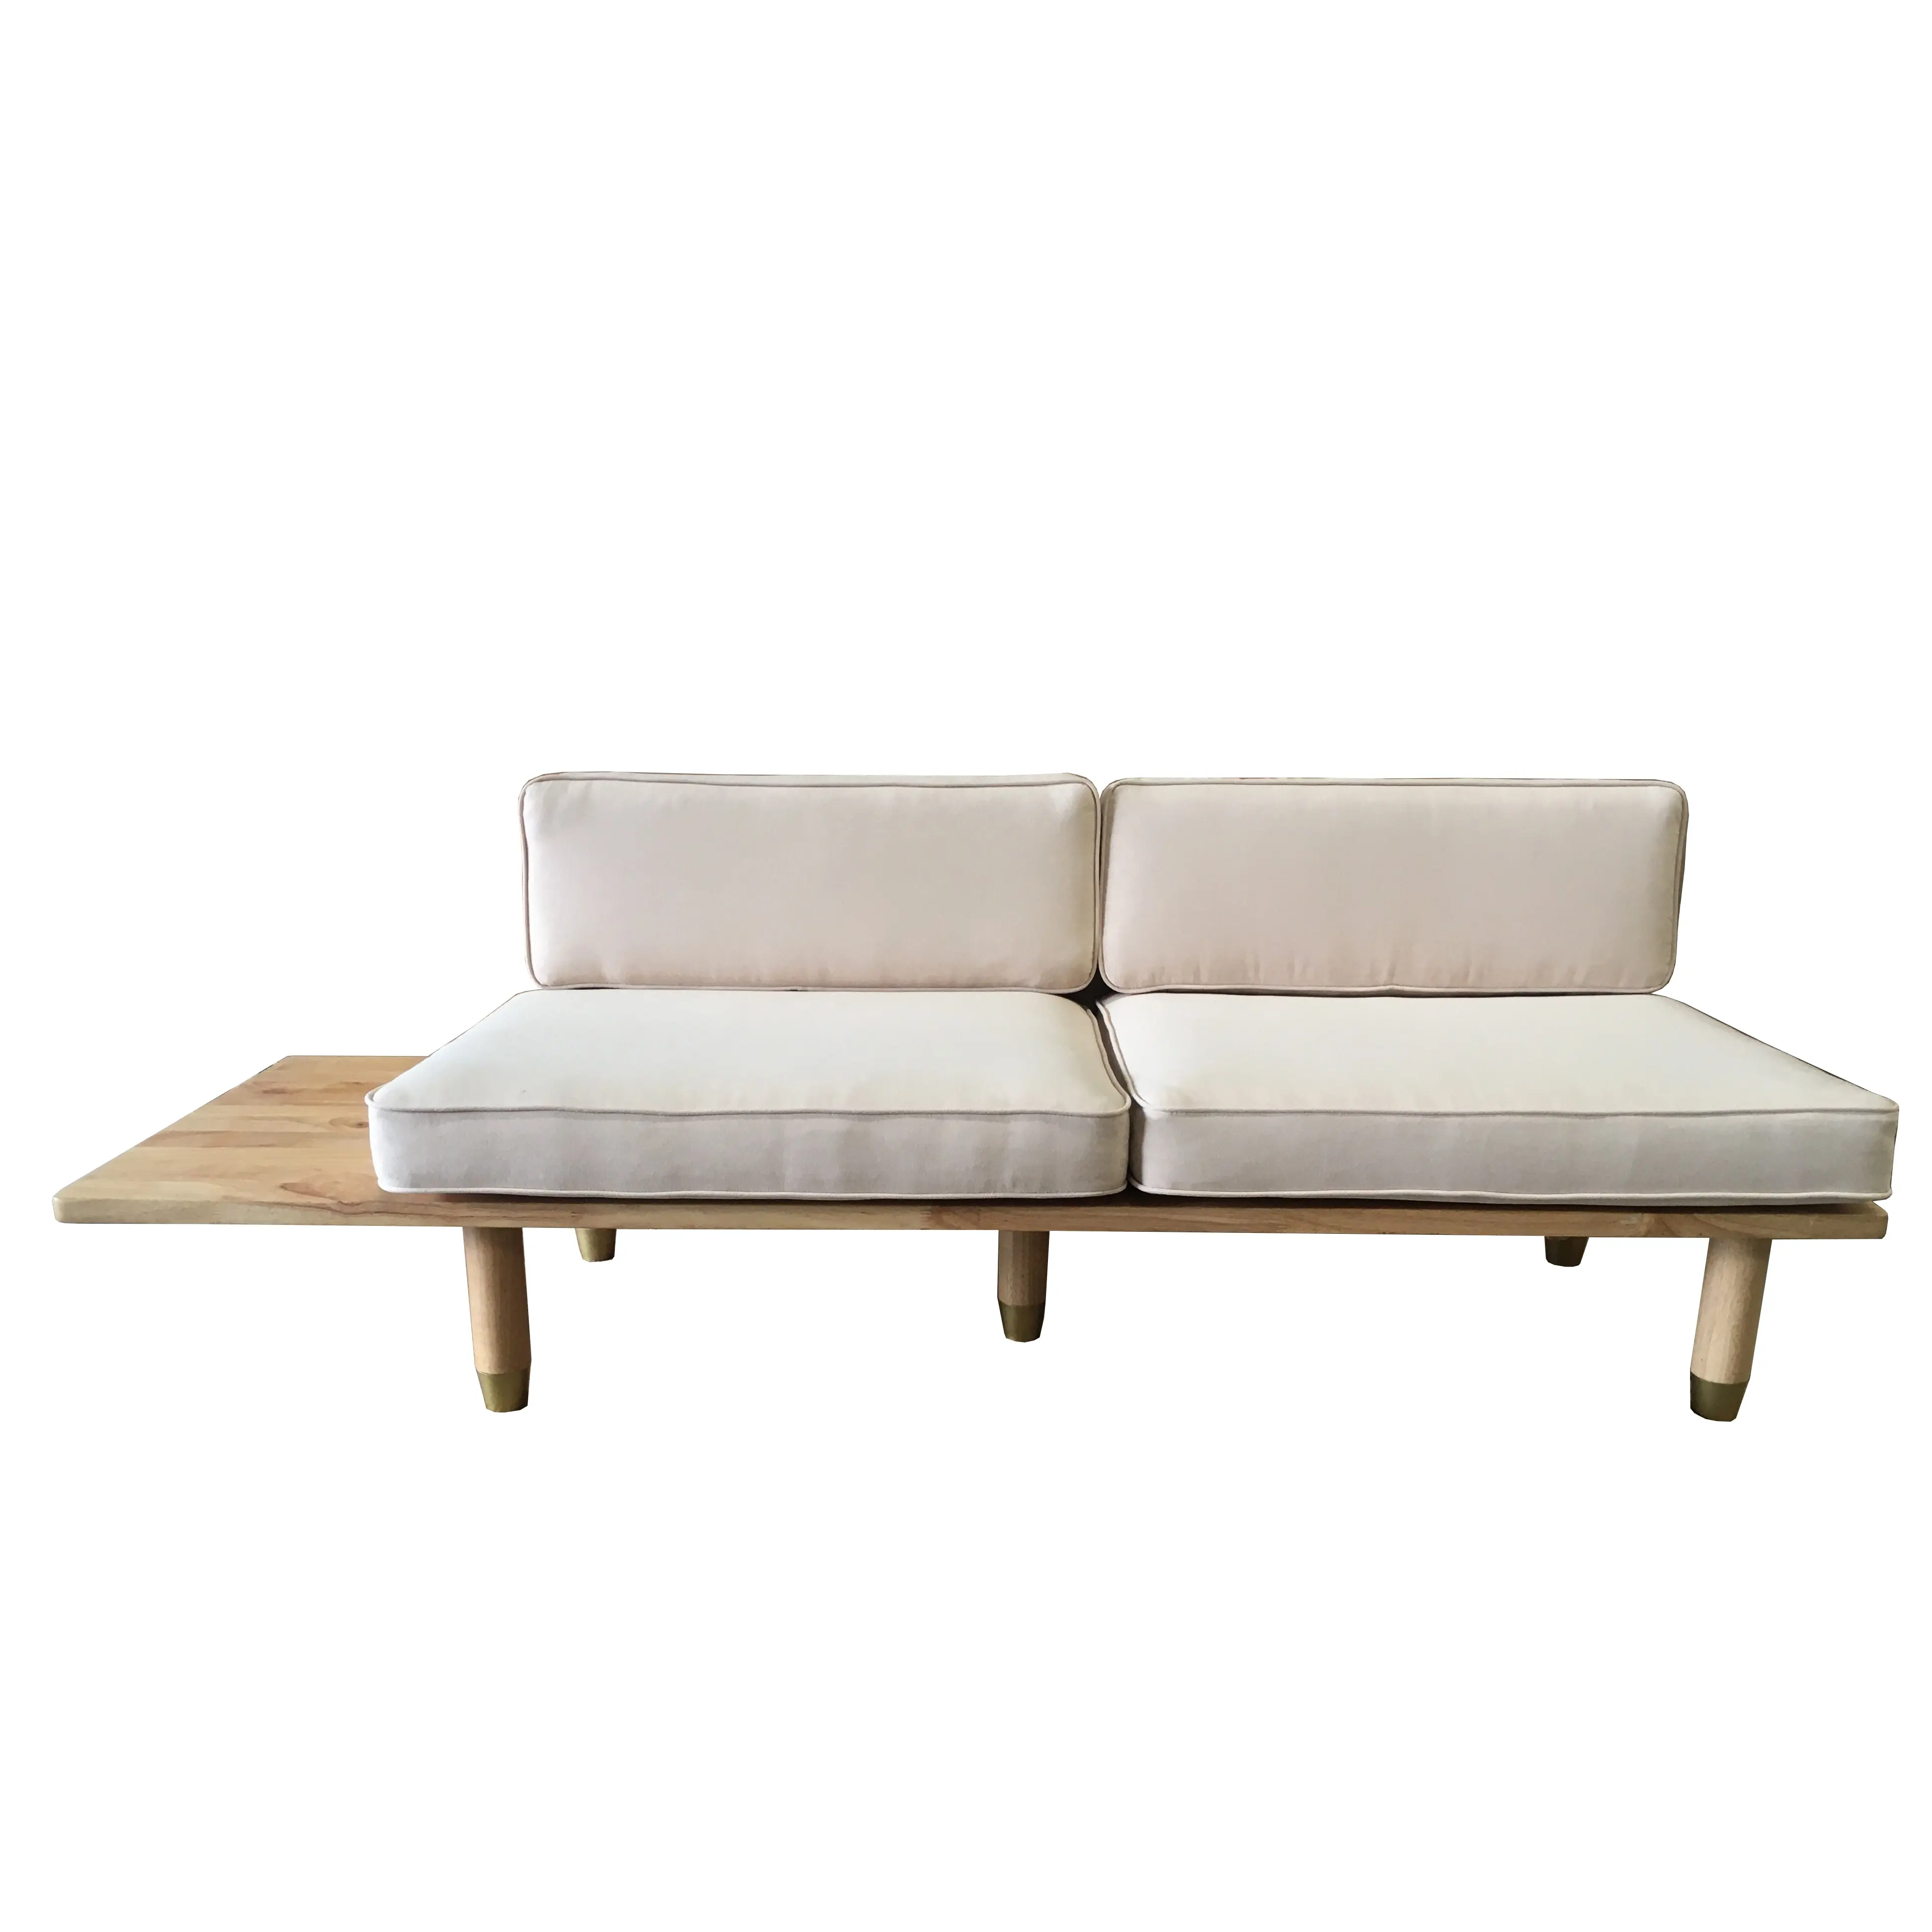 Роскошный современный деревянный диван из дуба по заводской цене, мебель для гостиной, сделано во Вьетнаме